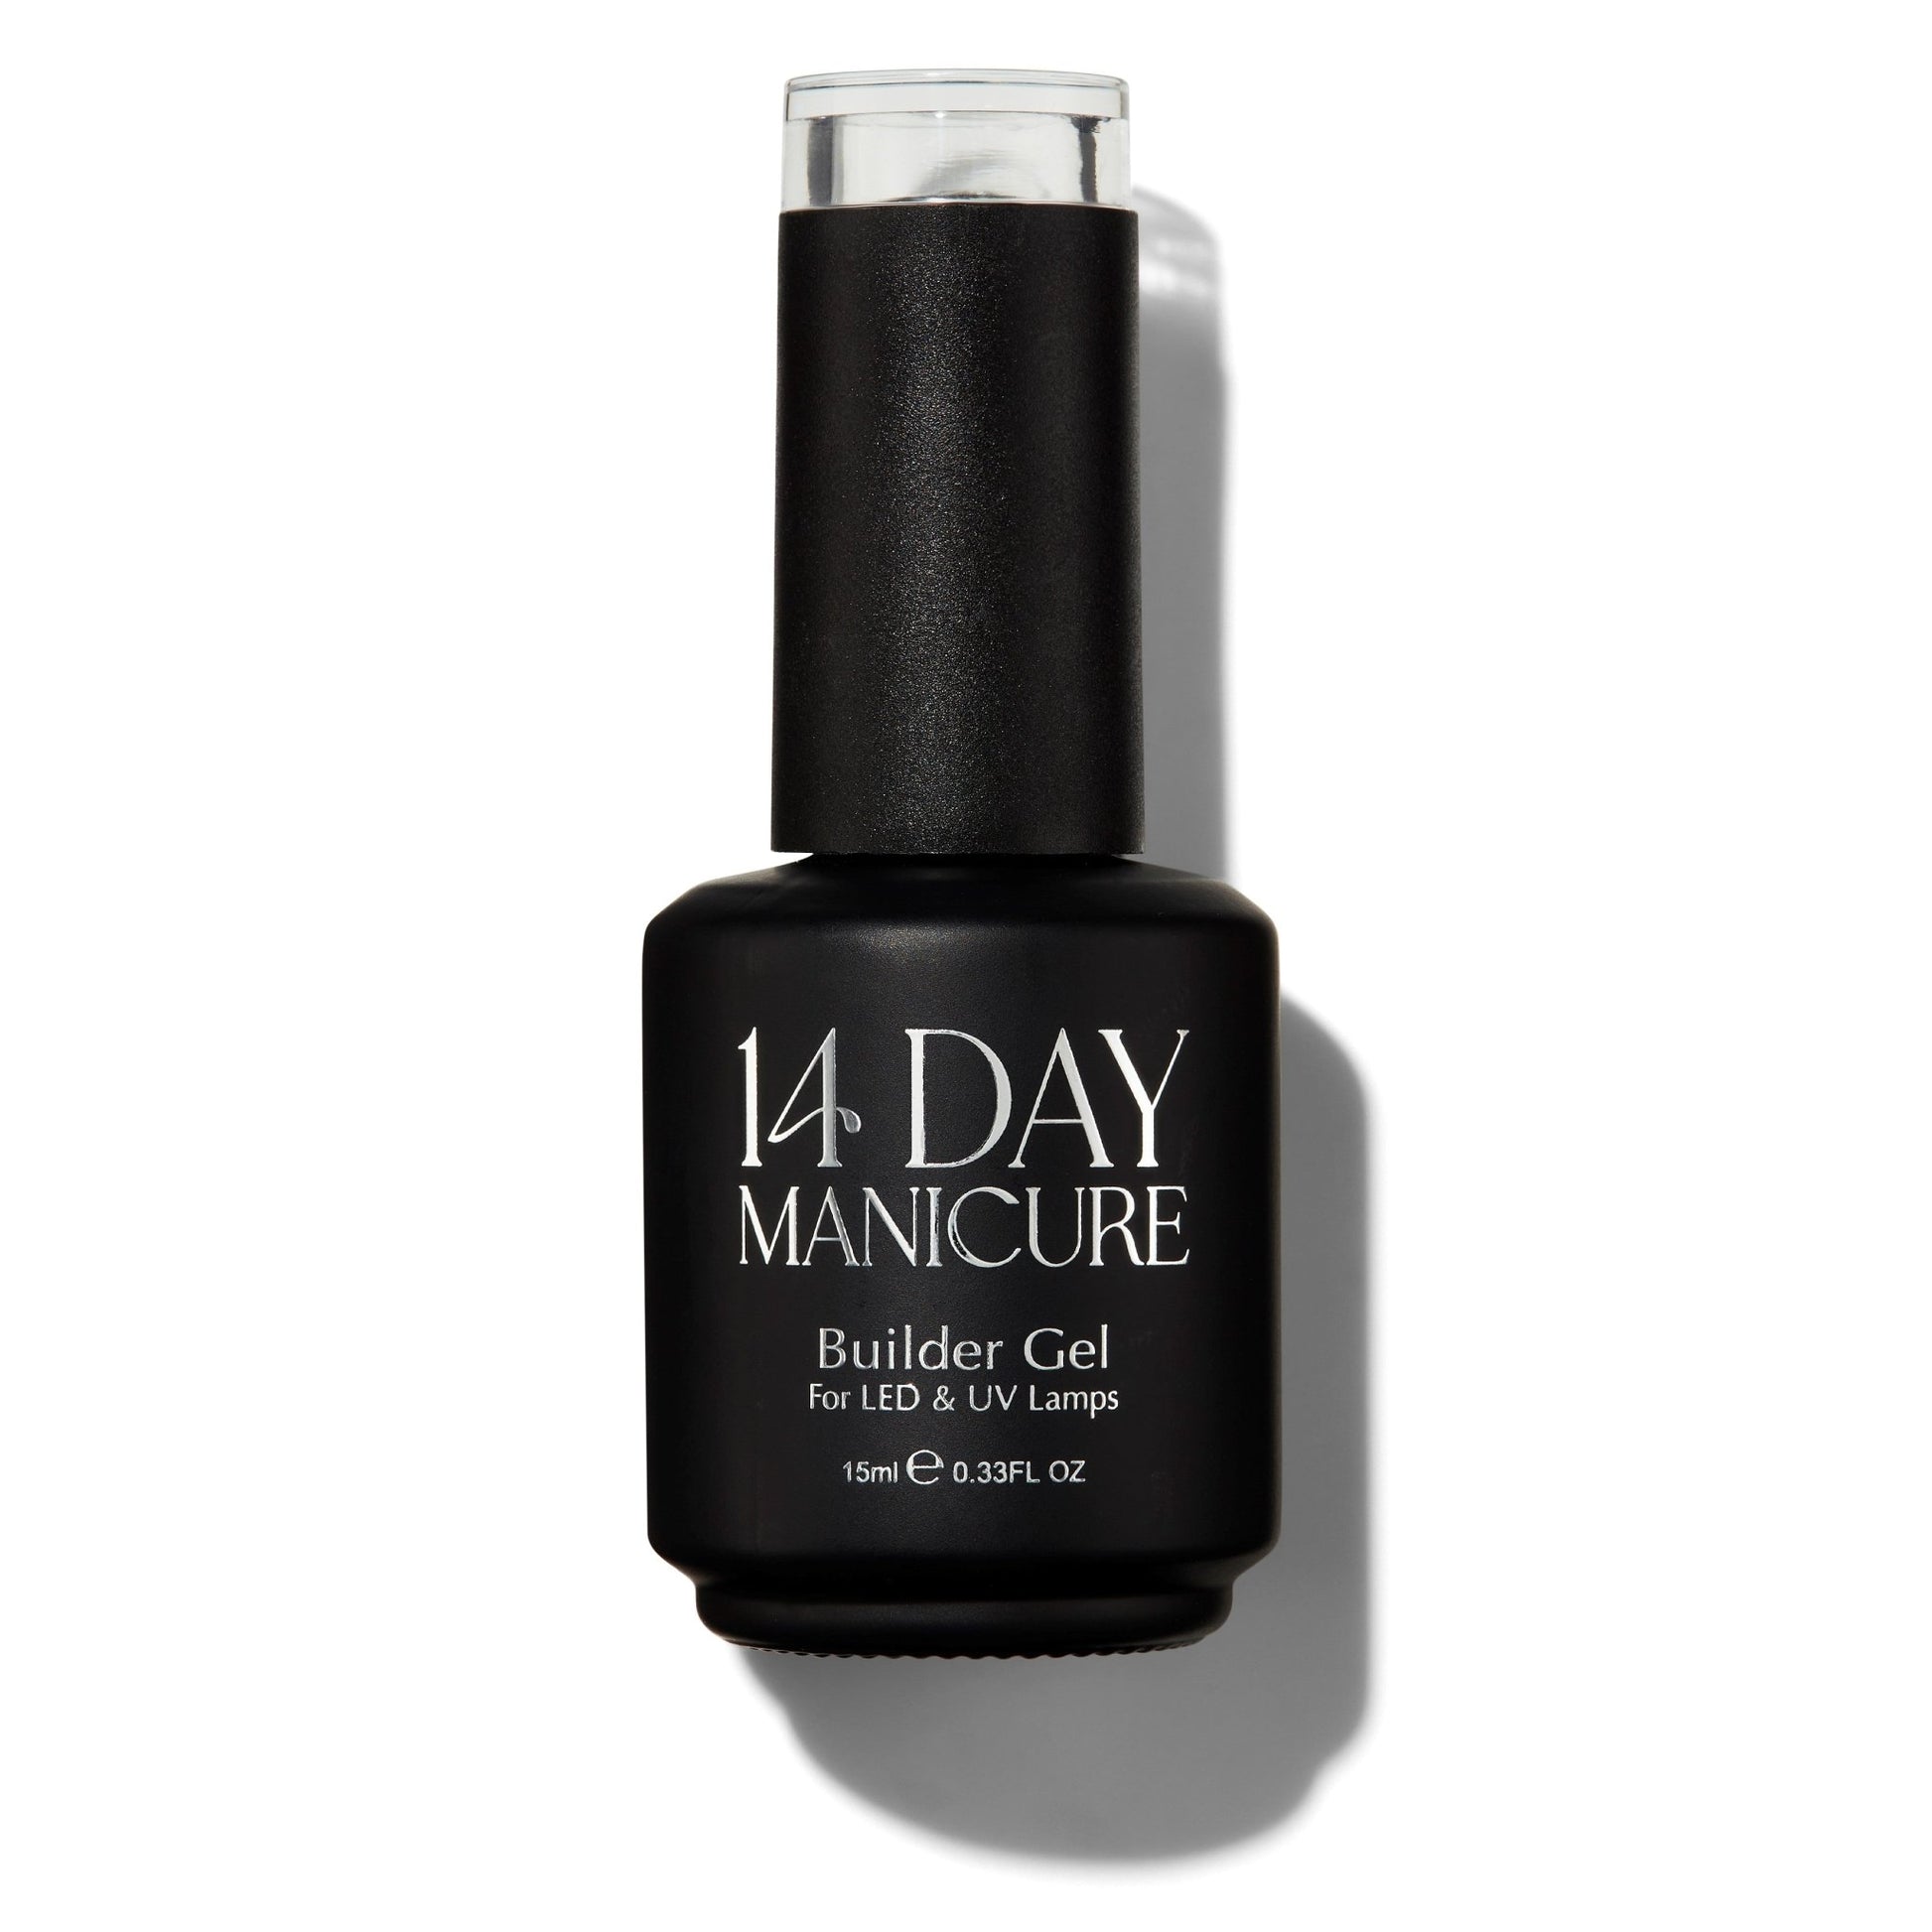 Don't Make Me Blush - Builder Gel Bottle 15ML - 14 Day Manicure - 3